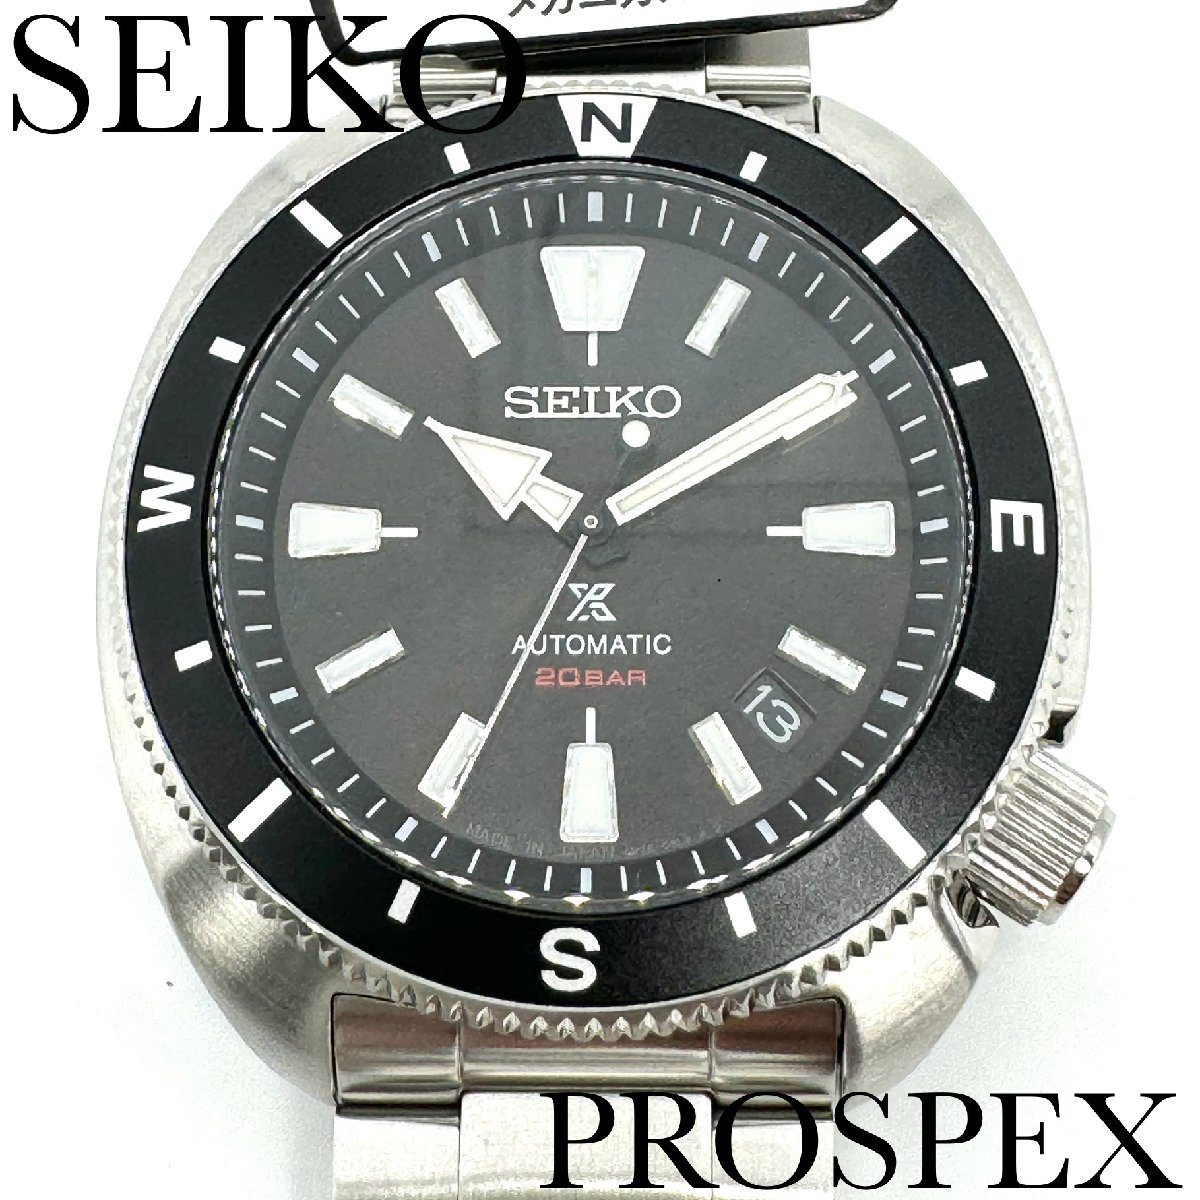 新品正規品『SEIKO PROSPEX FIELDMASTER』セイコー プロスペックス フィールドマスター 自動巻き腕時計 メンズ SBDY113【送料無料】_画像1